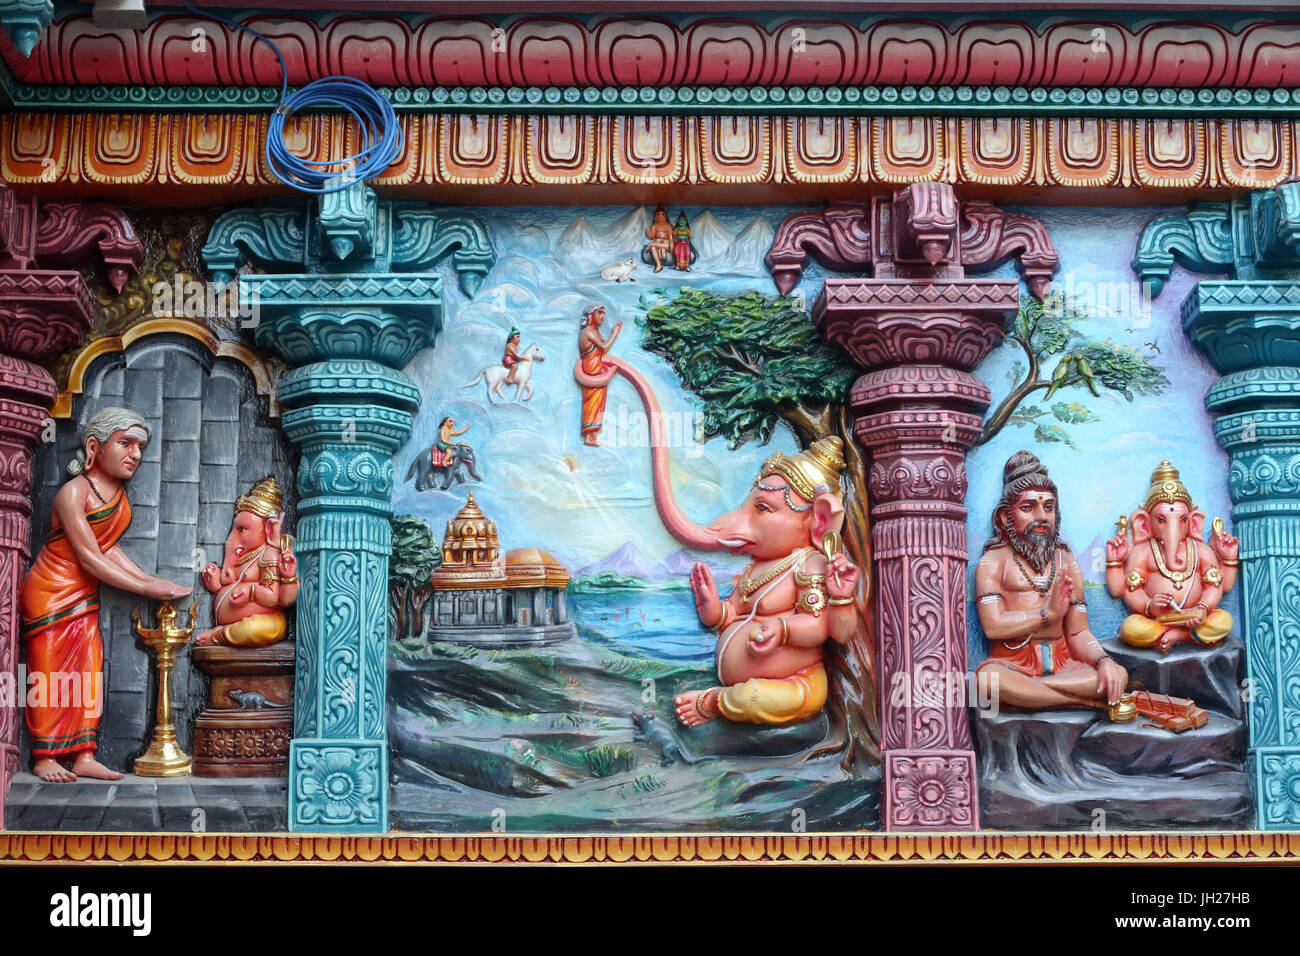 Hindu-Tempel Sri Vadapathira Kaliamman. Ganesha auch bekannt als Ganapati und Vinayaka, gehört zu den am meisten verehrten Gottheiten im hinduistischen Pantheon.  Sünde Stockfoto